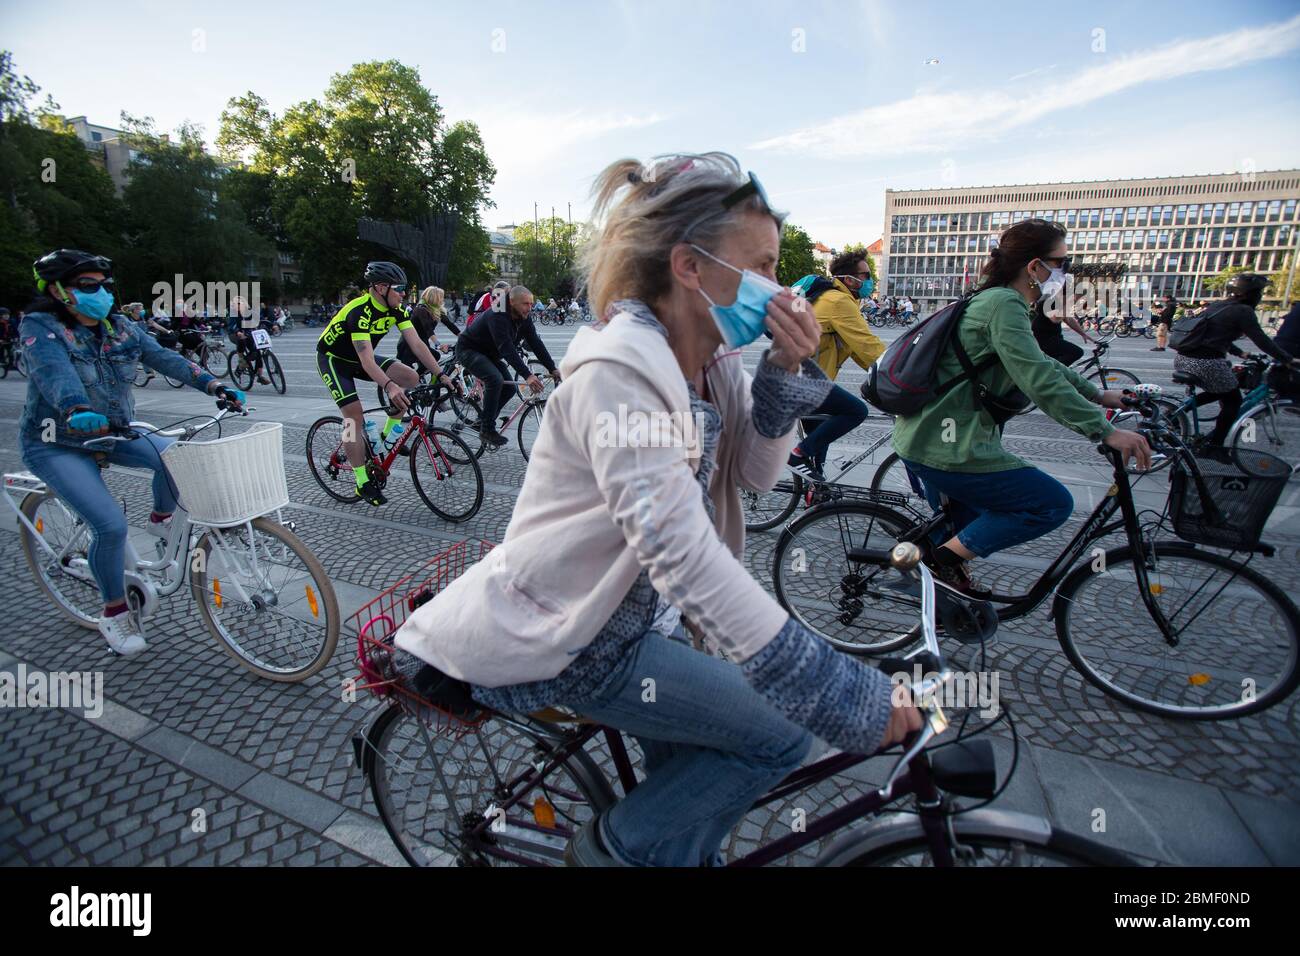 Ljubljana, Slowenien, 8. Mai 2020: Tausende Menschen auf dem Fahrrad protestieren gegen die Regierung in der Krise des Coronavirus. Nach Enthüllungen der Korruption in der Regierung von Janez Janša und Vorwürfen ihrer undemokratischen Herrschaft fuhren 5000 Menschen im Zeichen des Protests durch Regierungsgebäude mit dem Fahrrad. Stockfoto